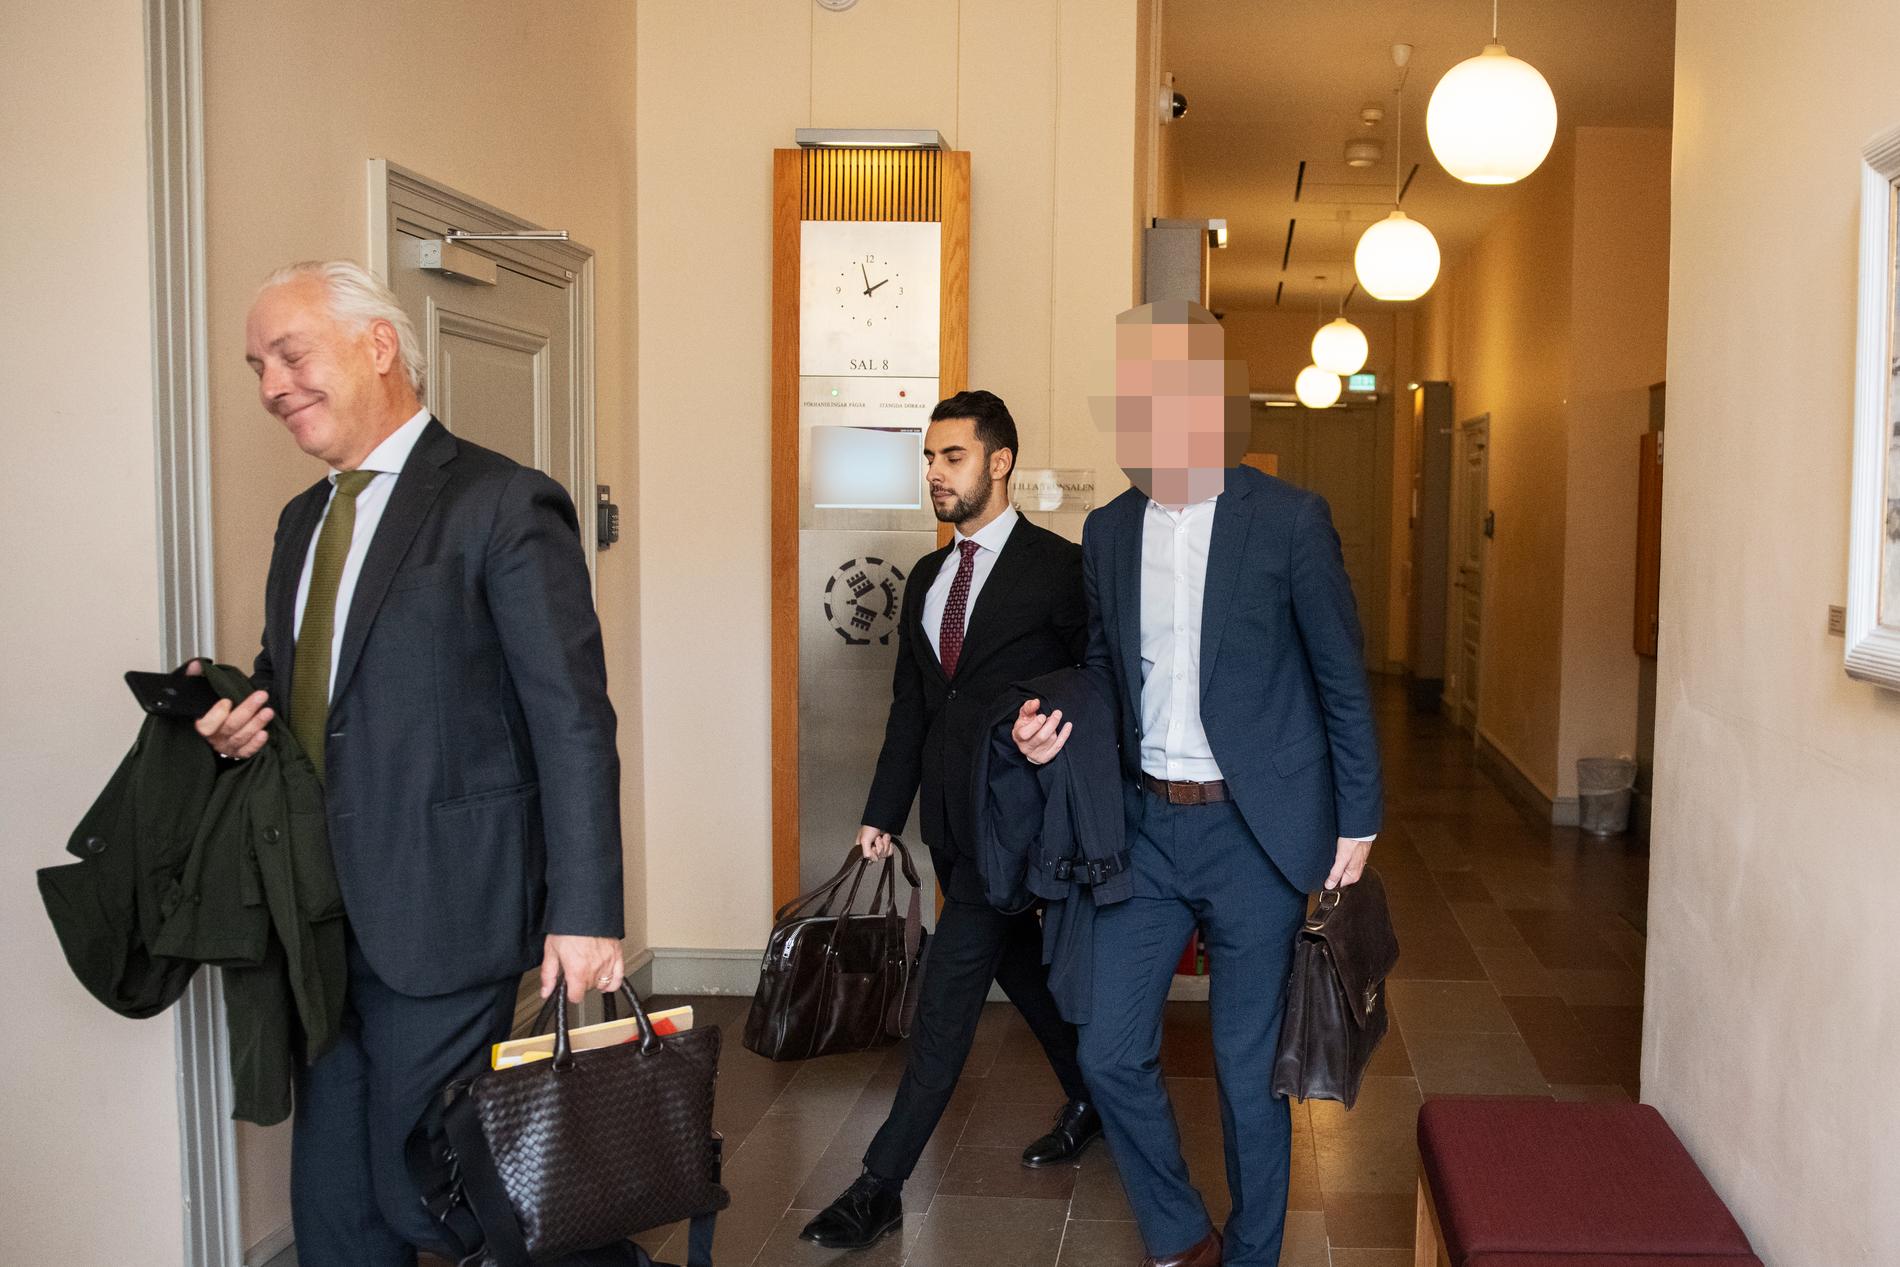 Försvarstoppen på väg in i rättsalen tillsammans med advokat Johan Eriksson.